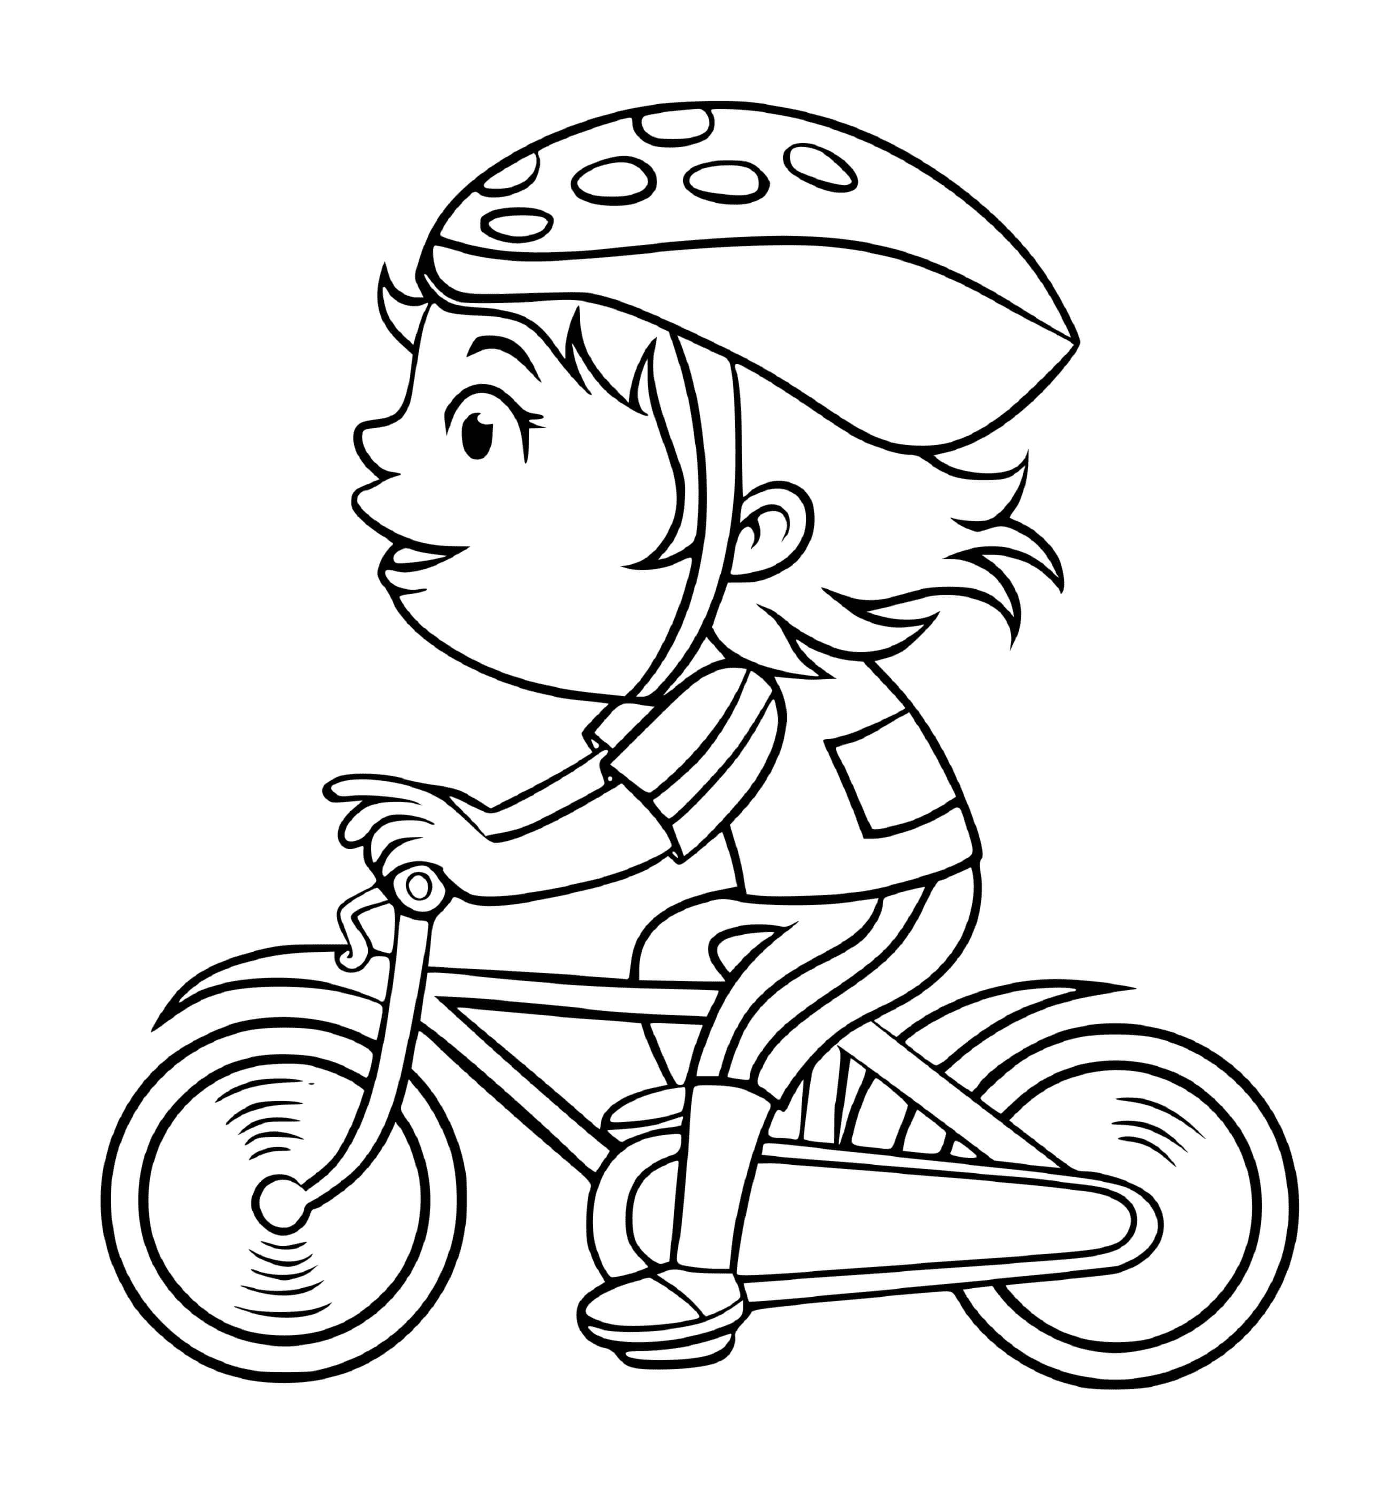  一个女孩骑自行车快速踏踏板 